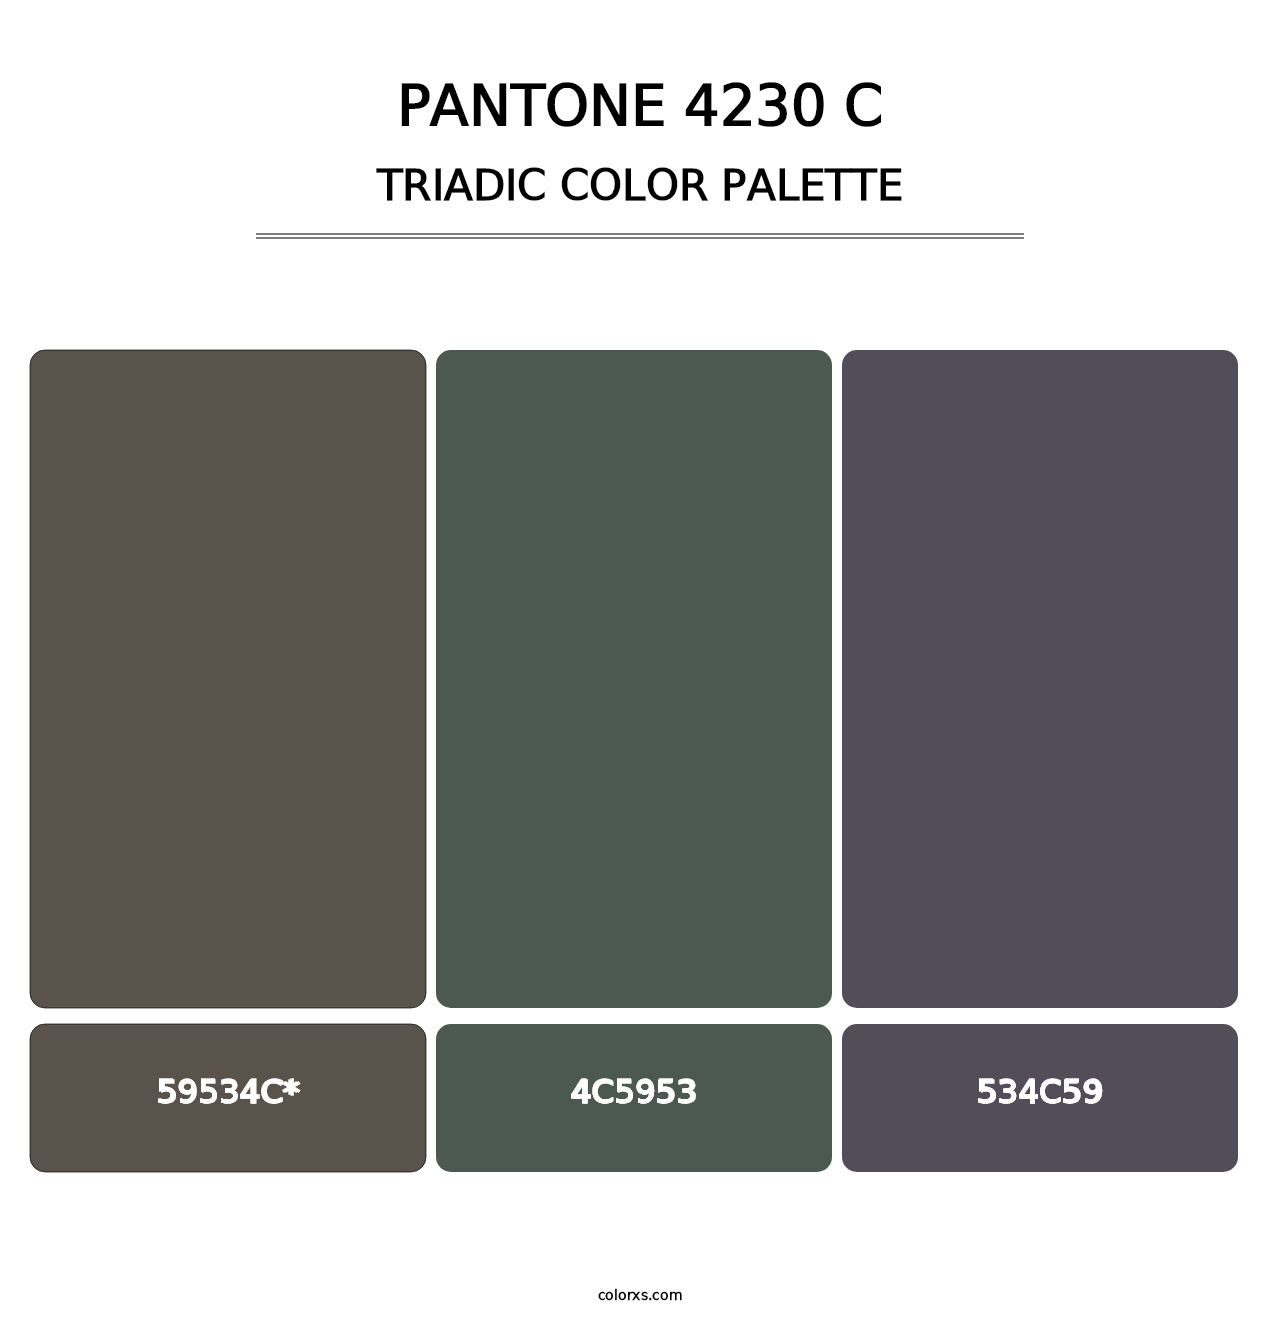 PANTONE 4230 C - Triadic Color Palette